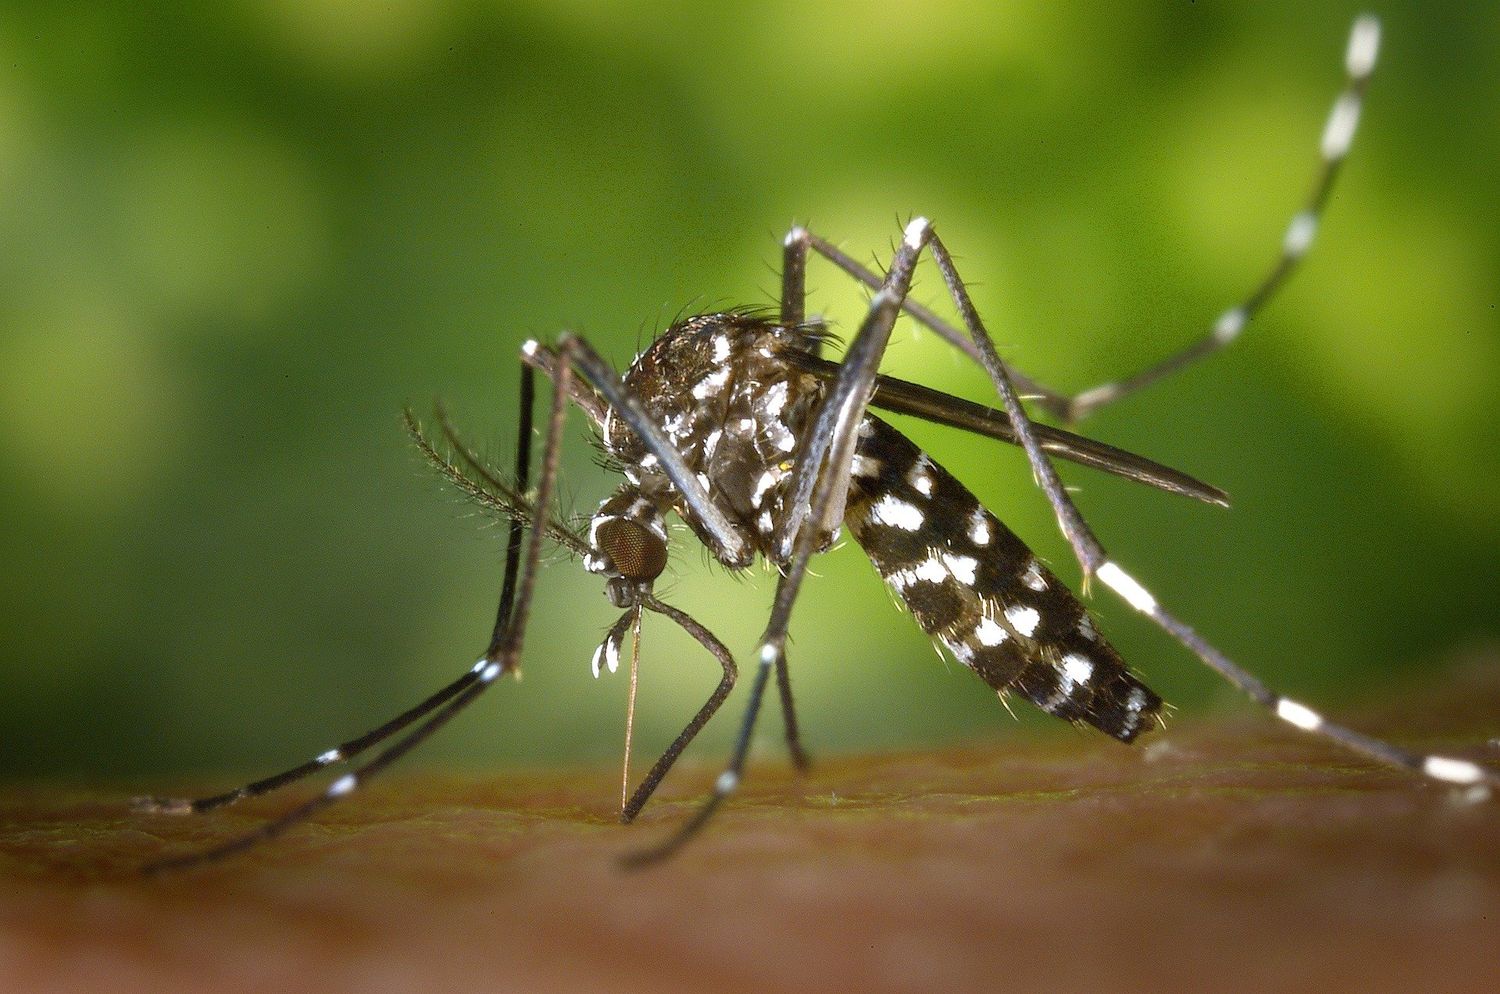  Le moustique-tigre est vecteur de maladies comme la dengue ou le virus Zika.